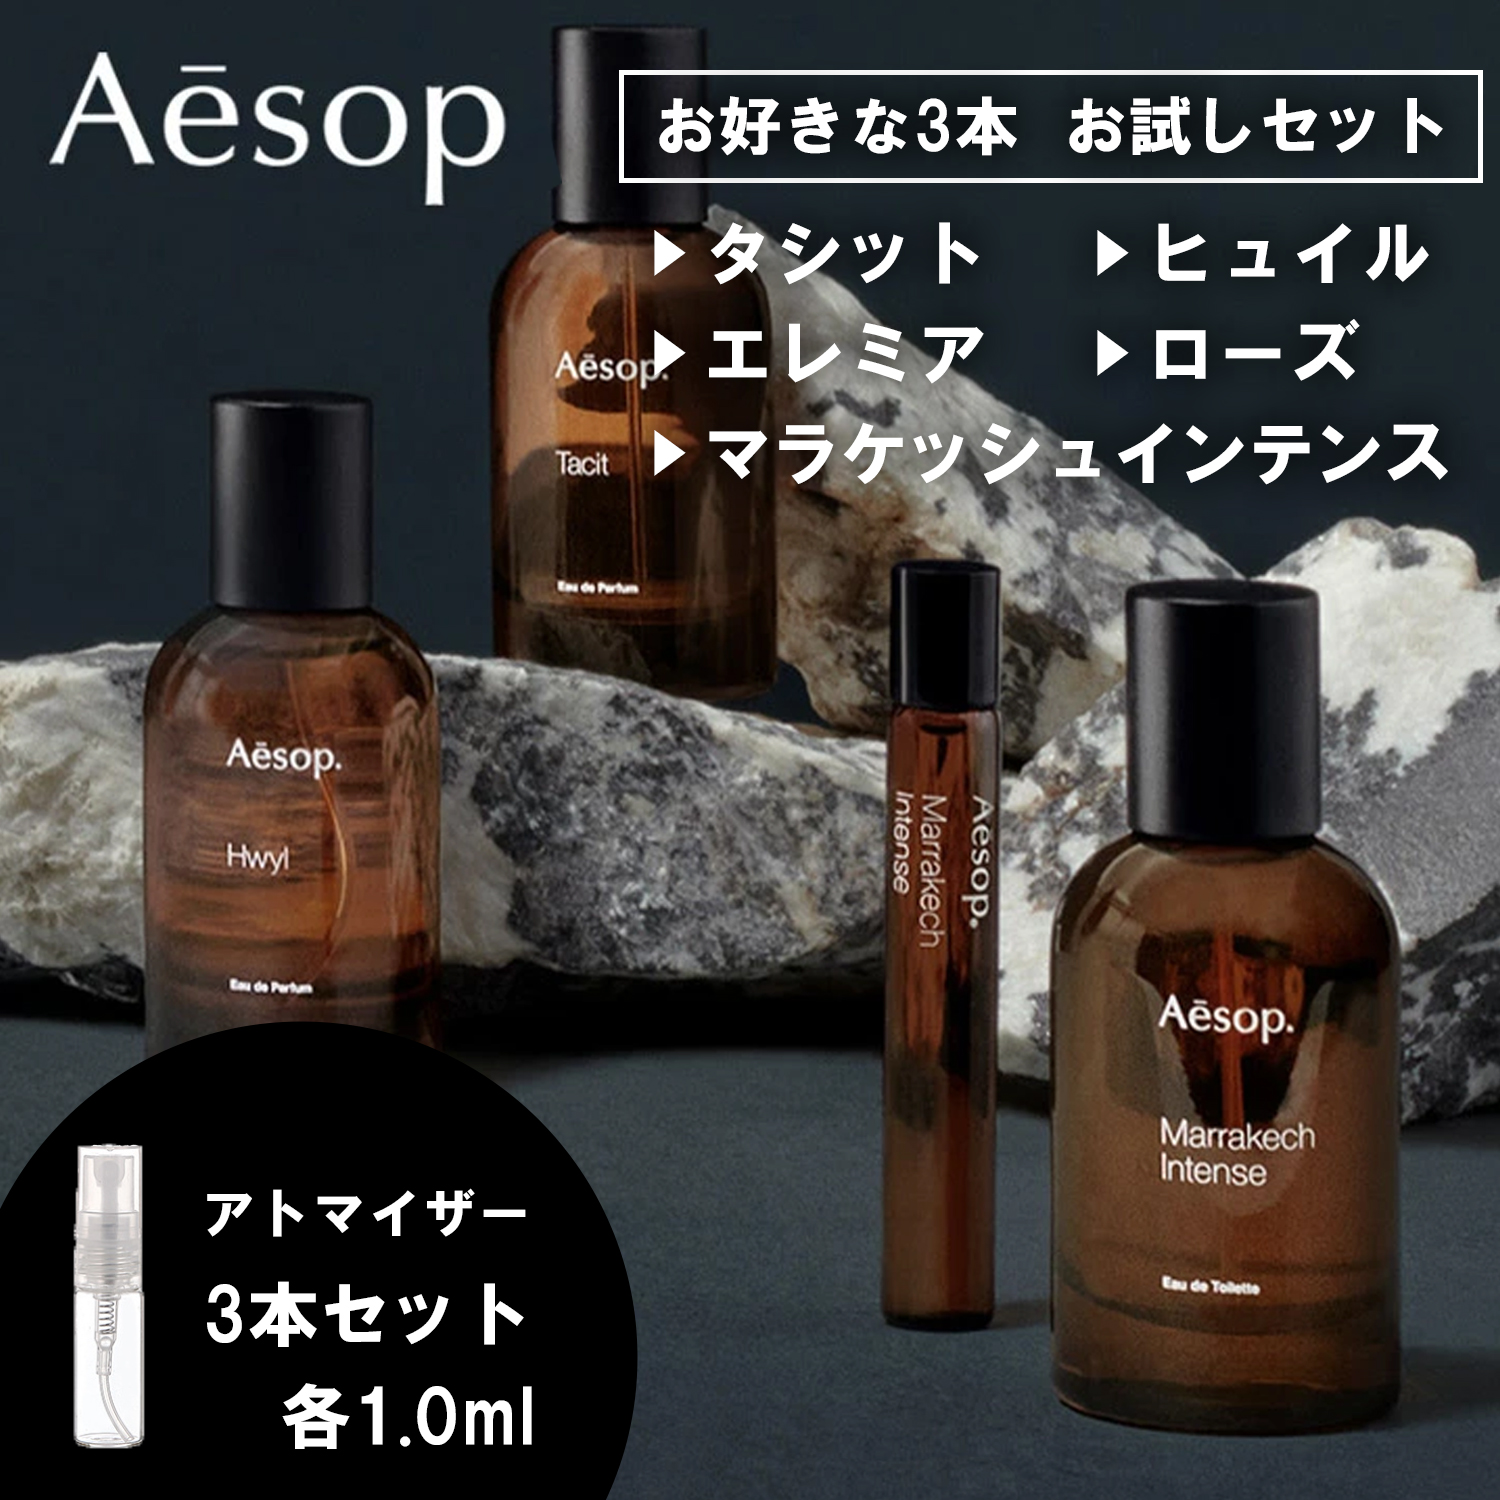 Aesop イソップ 香水 お試し 1ml 選べる 3本セット 人気 メンズ レディース ユニセックス